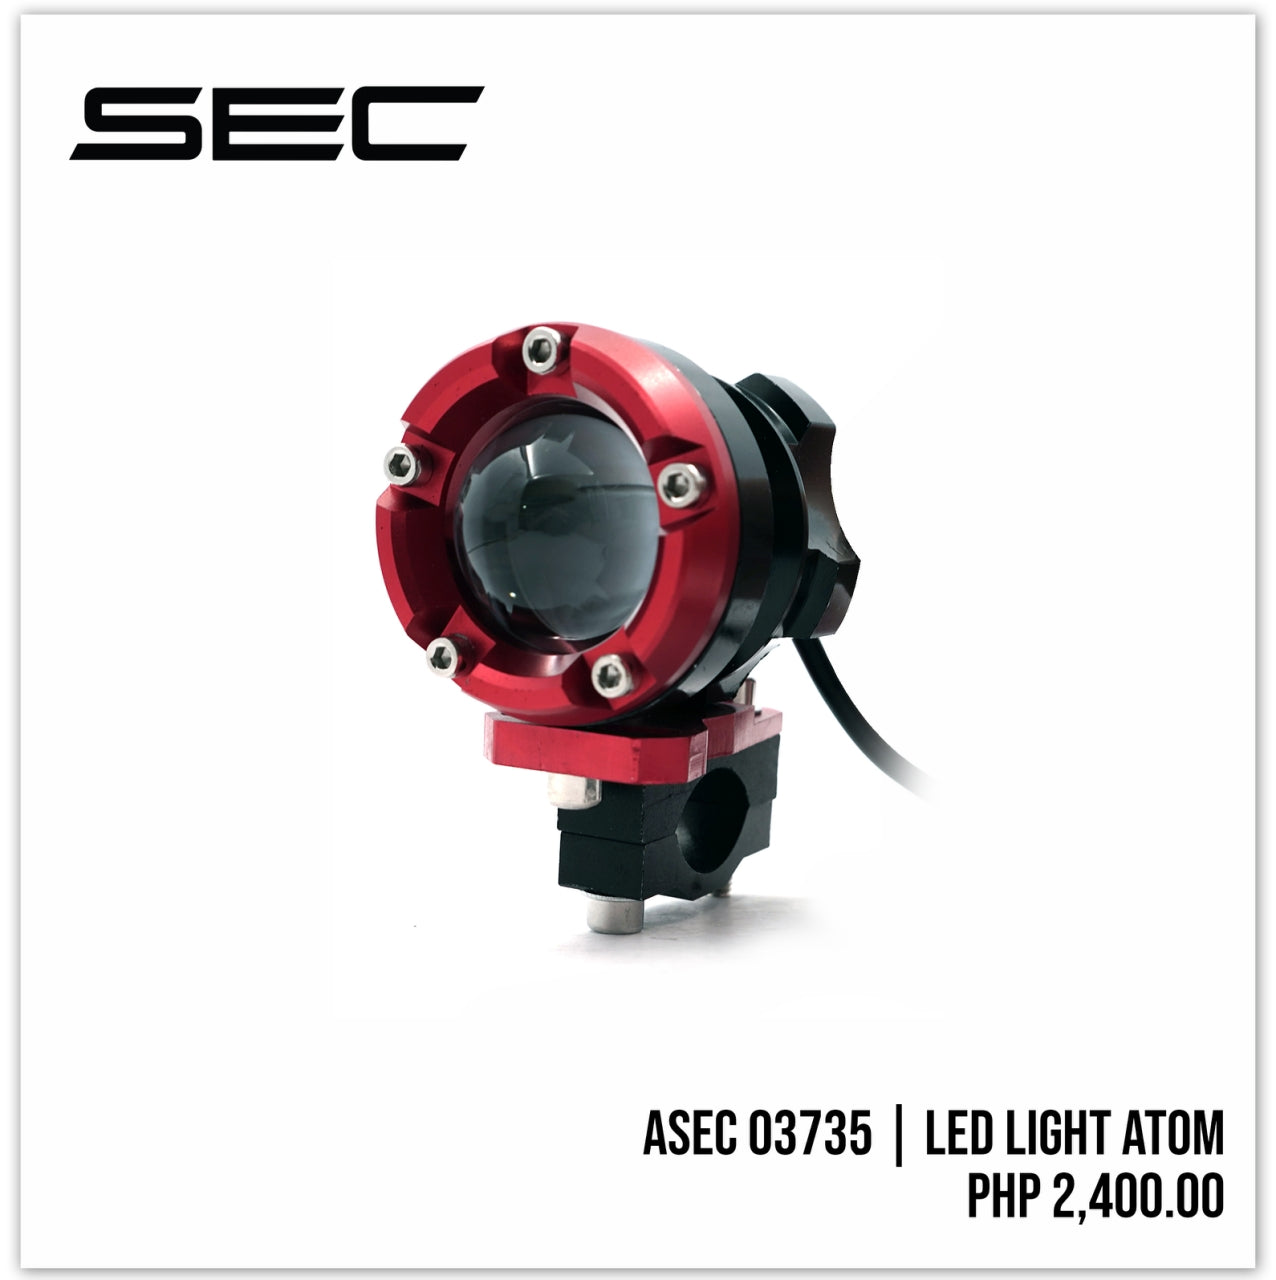 LED Light - Atom